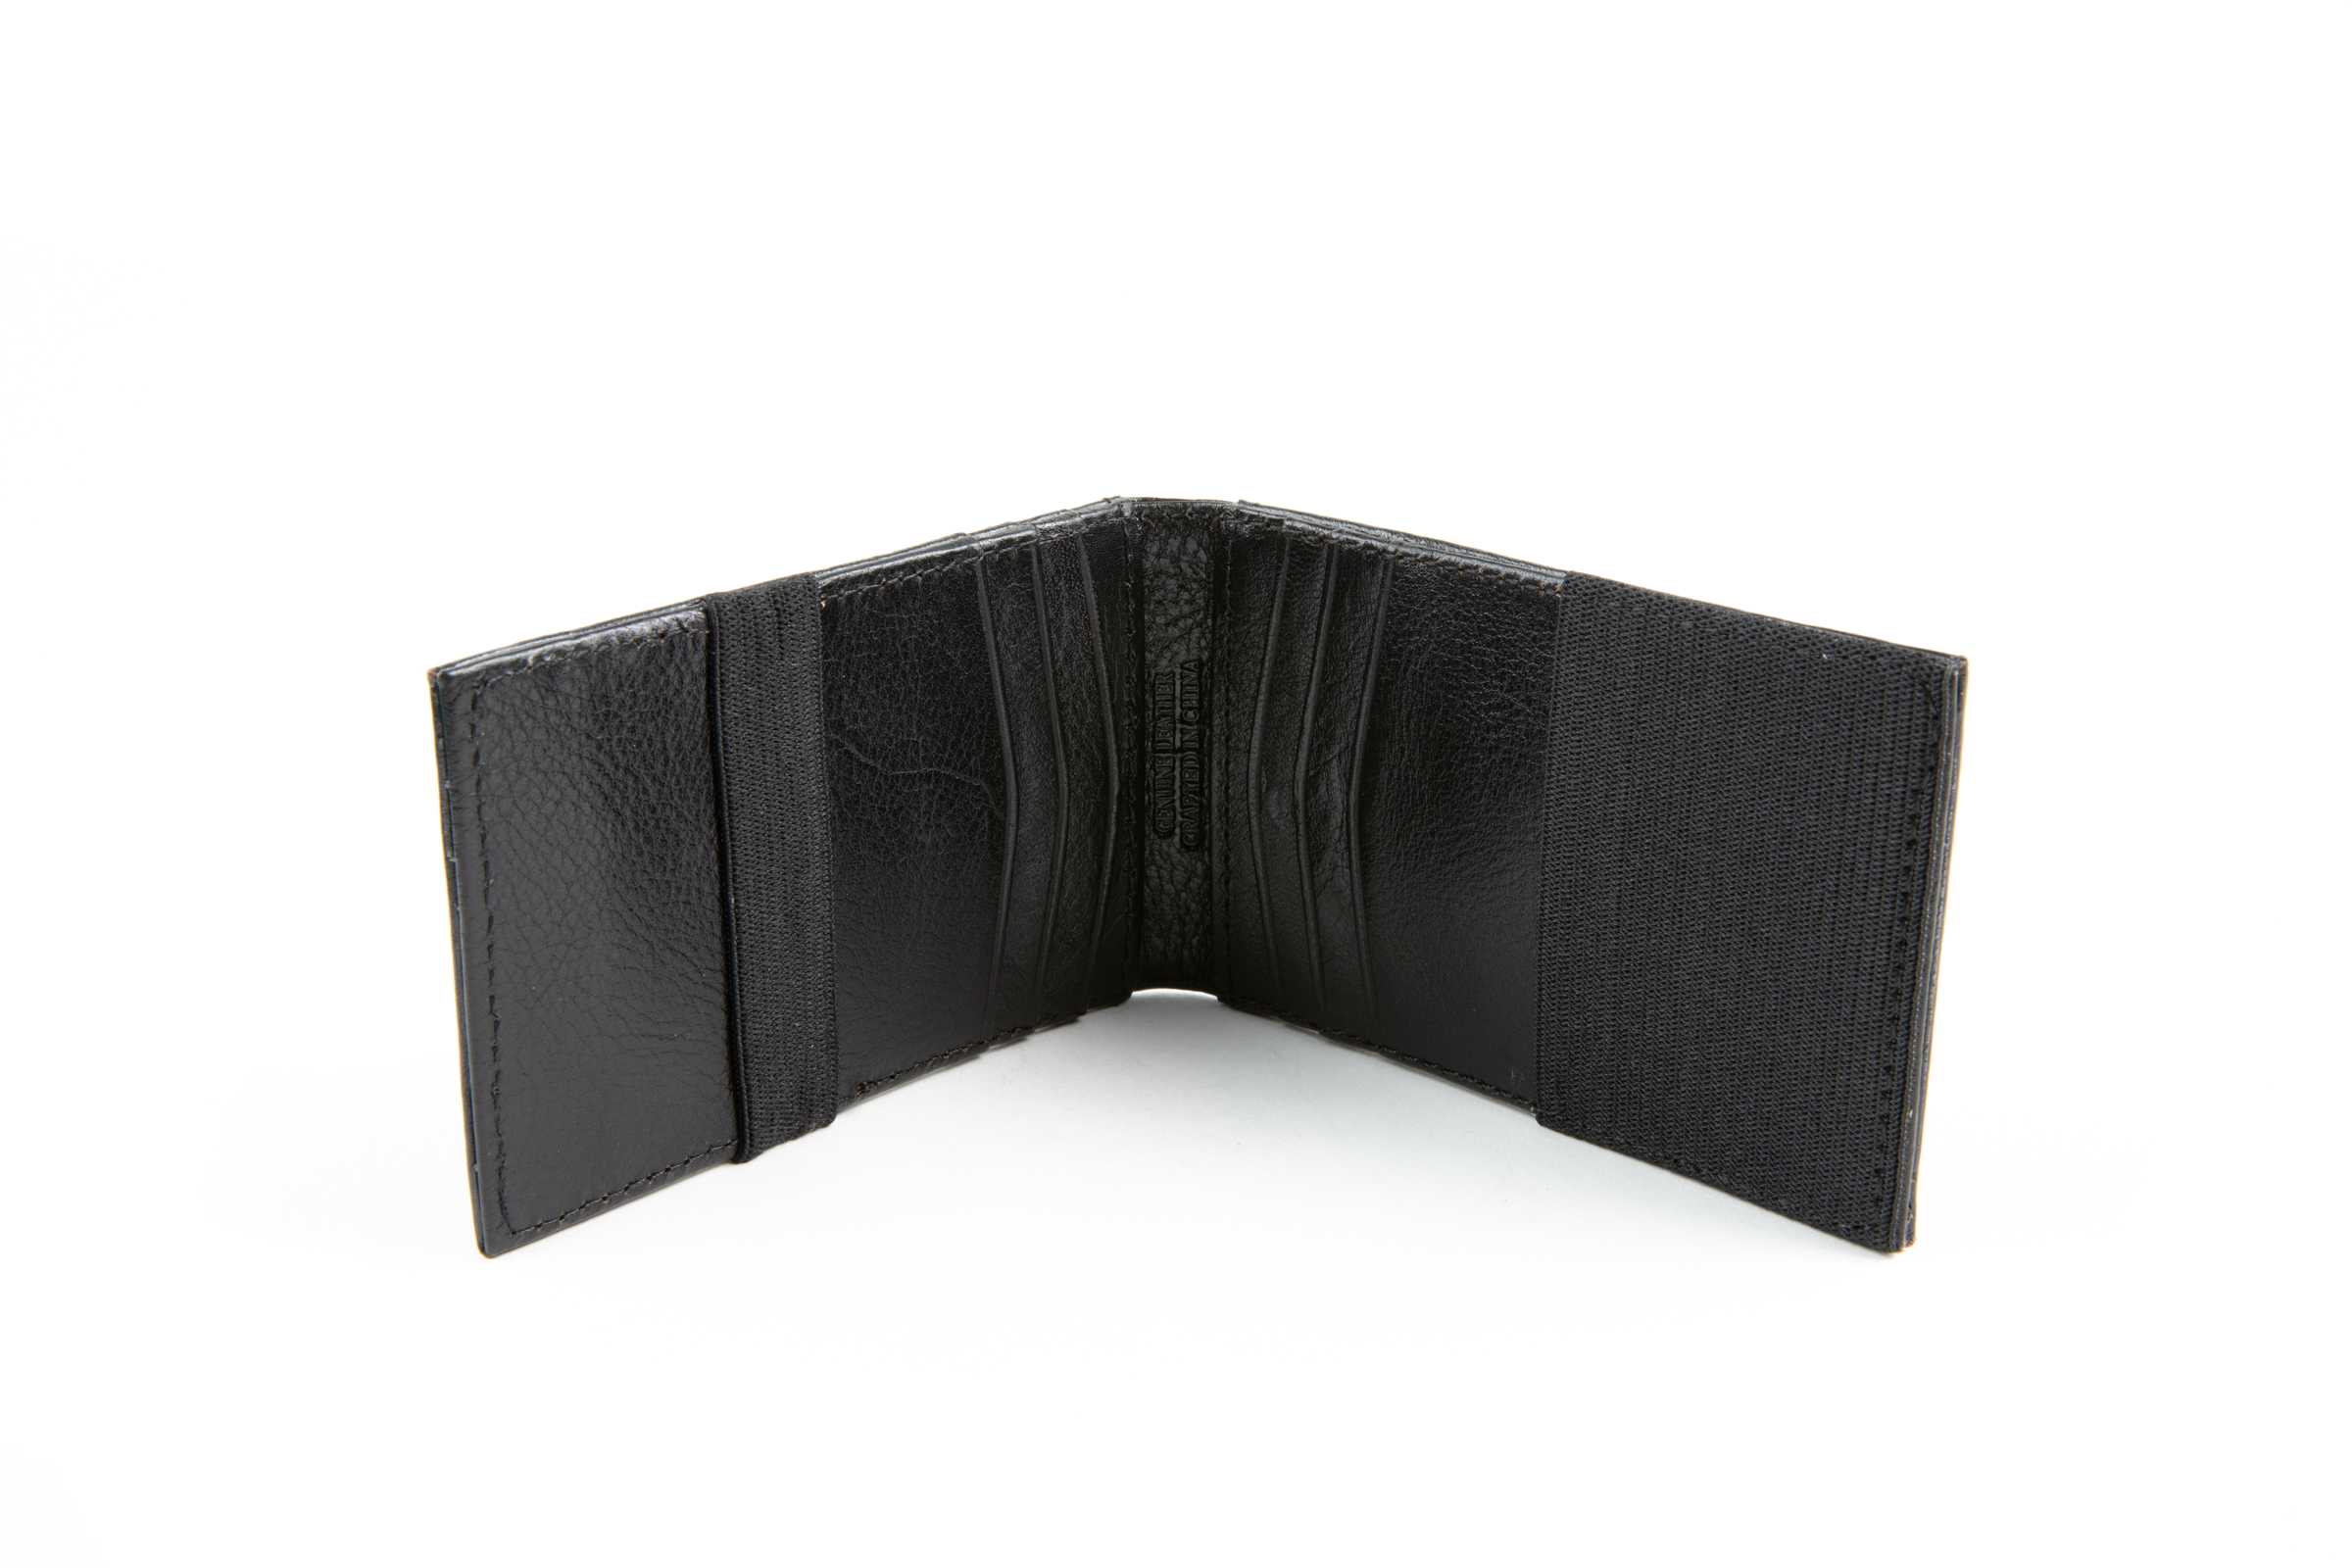 Black Double Side Alligator Skin Bifold Wallet for Men RFID Blocking | VINAM-98